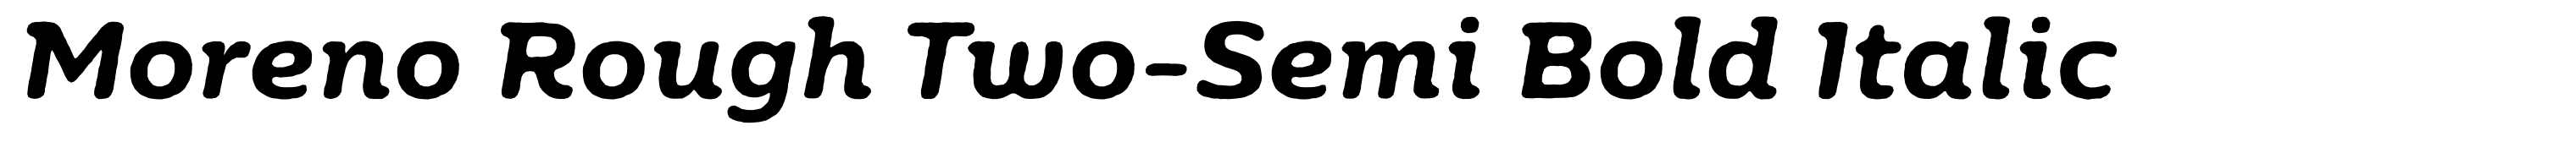 Moreno Rough Two-Semi Bold Italic